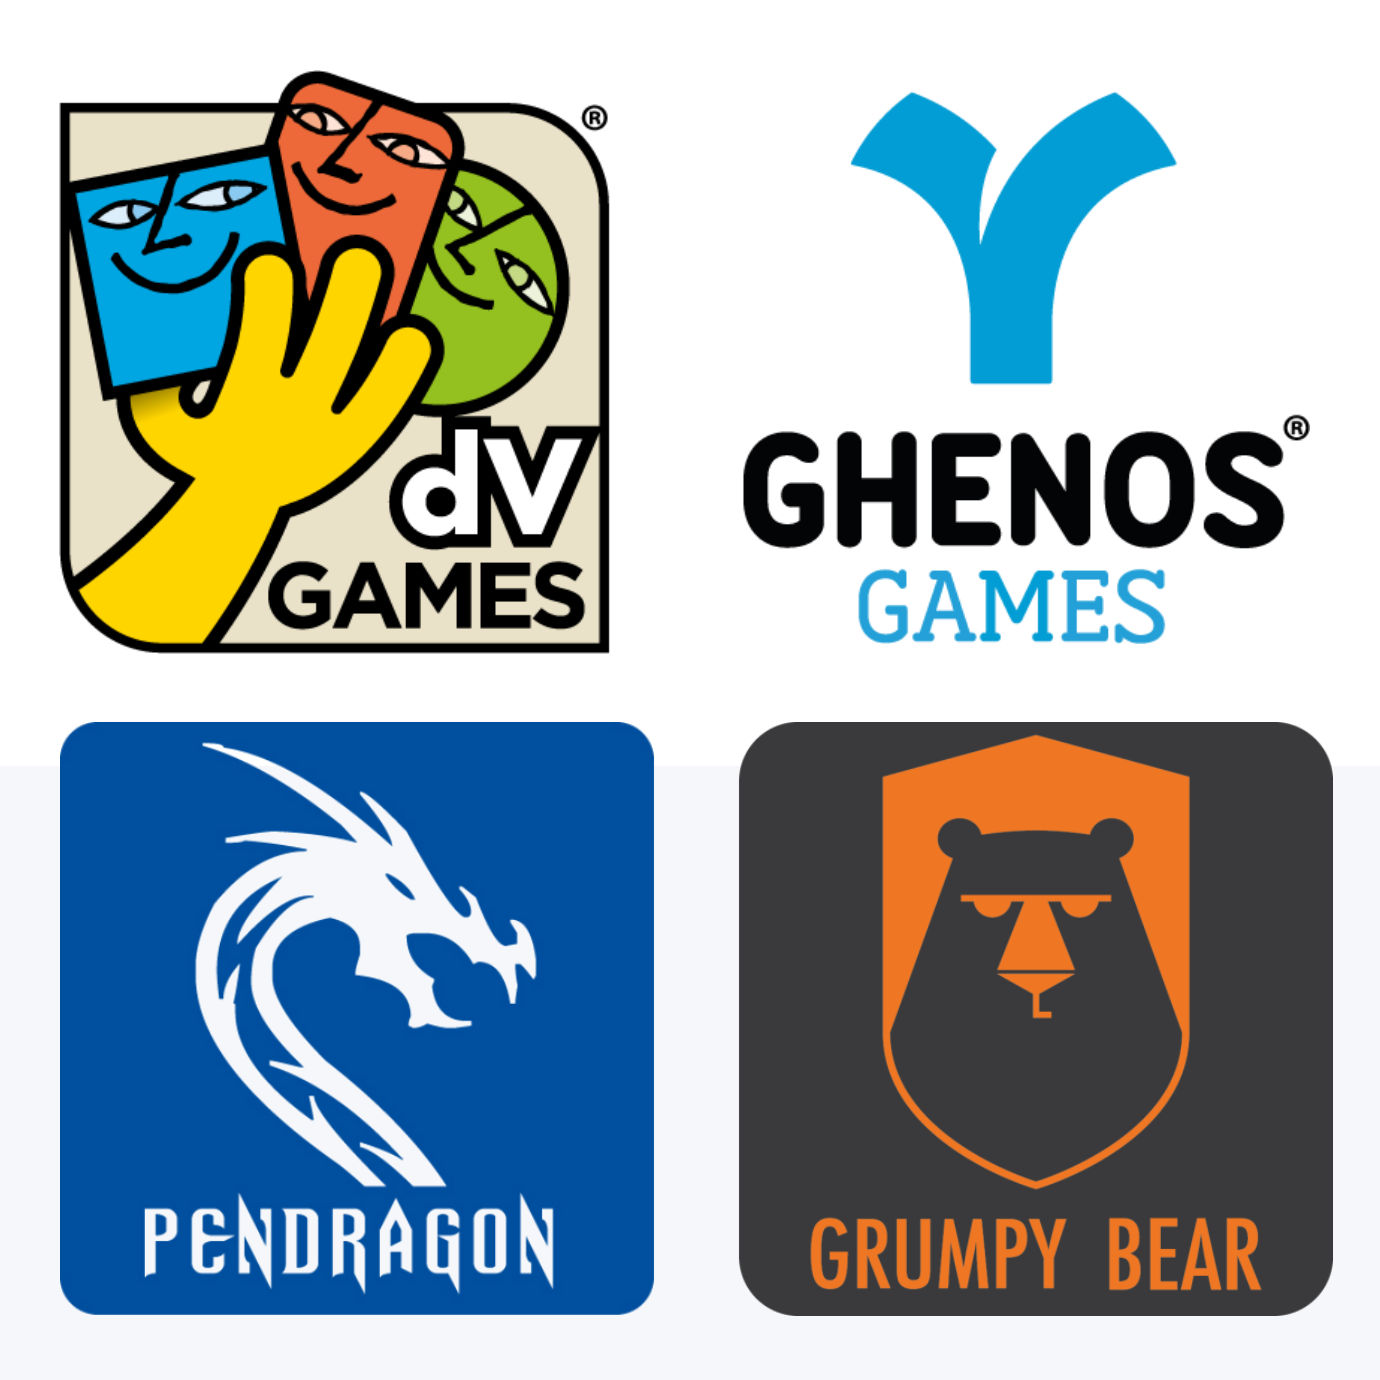 L’accordo per la distribuzione in Italia dei giochi Pendragon Game Studio